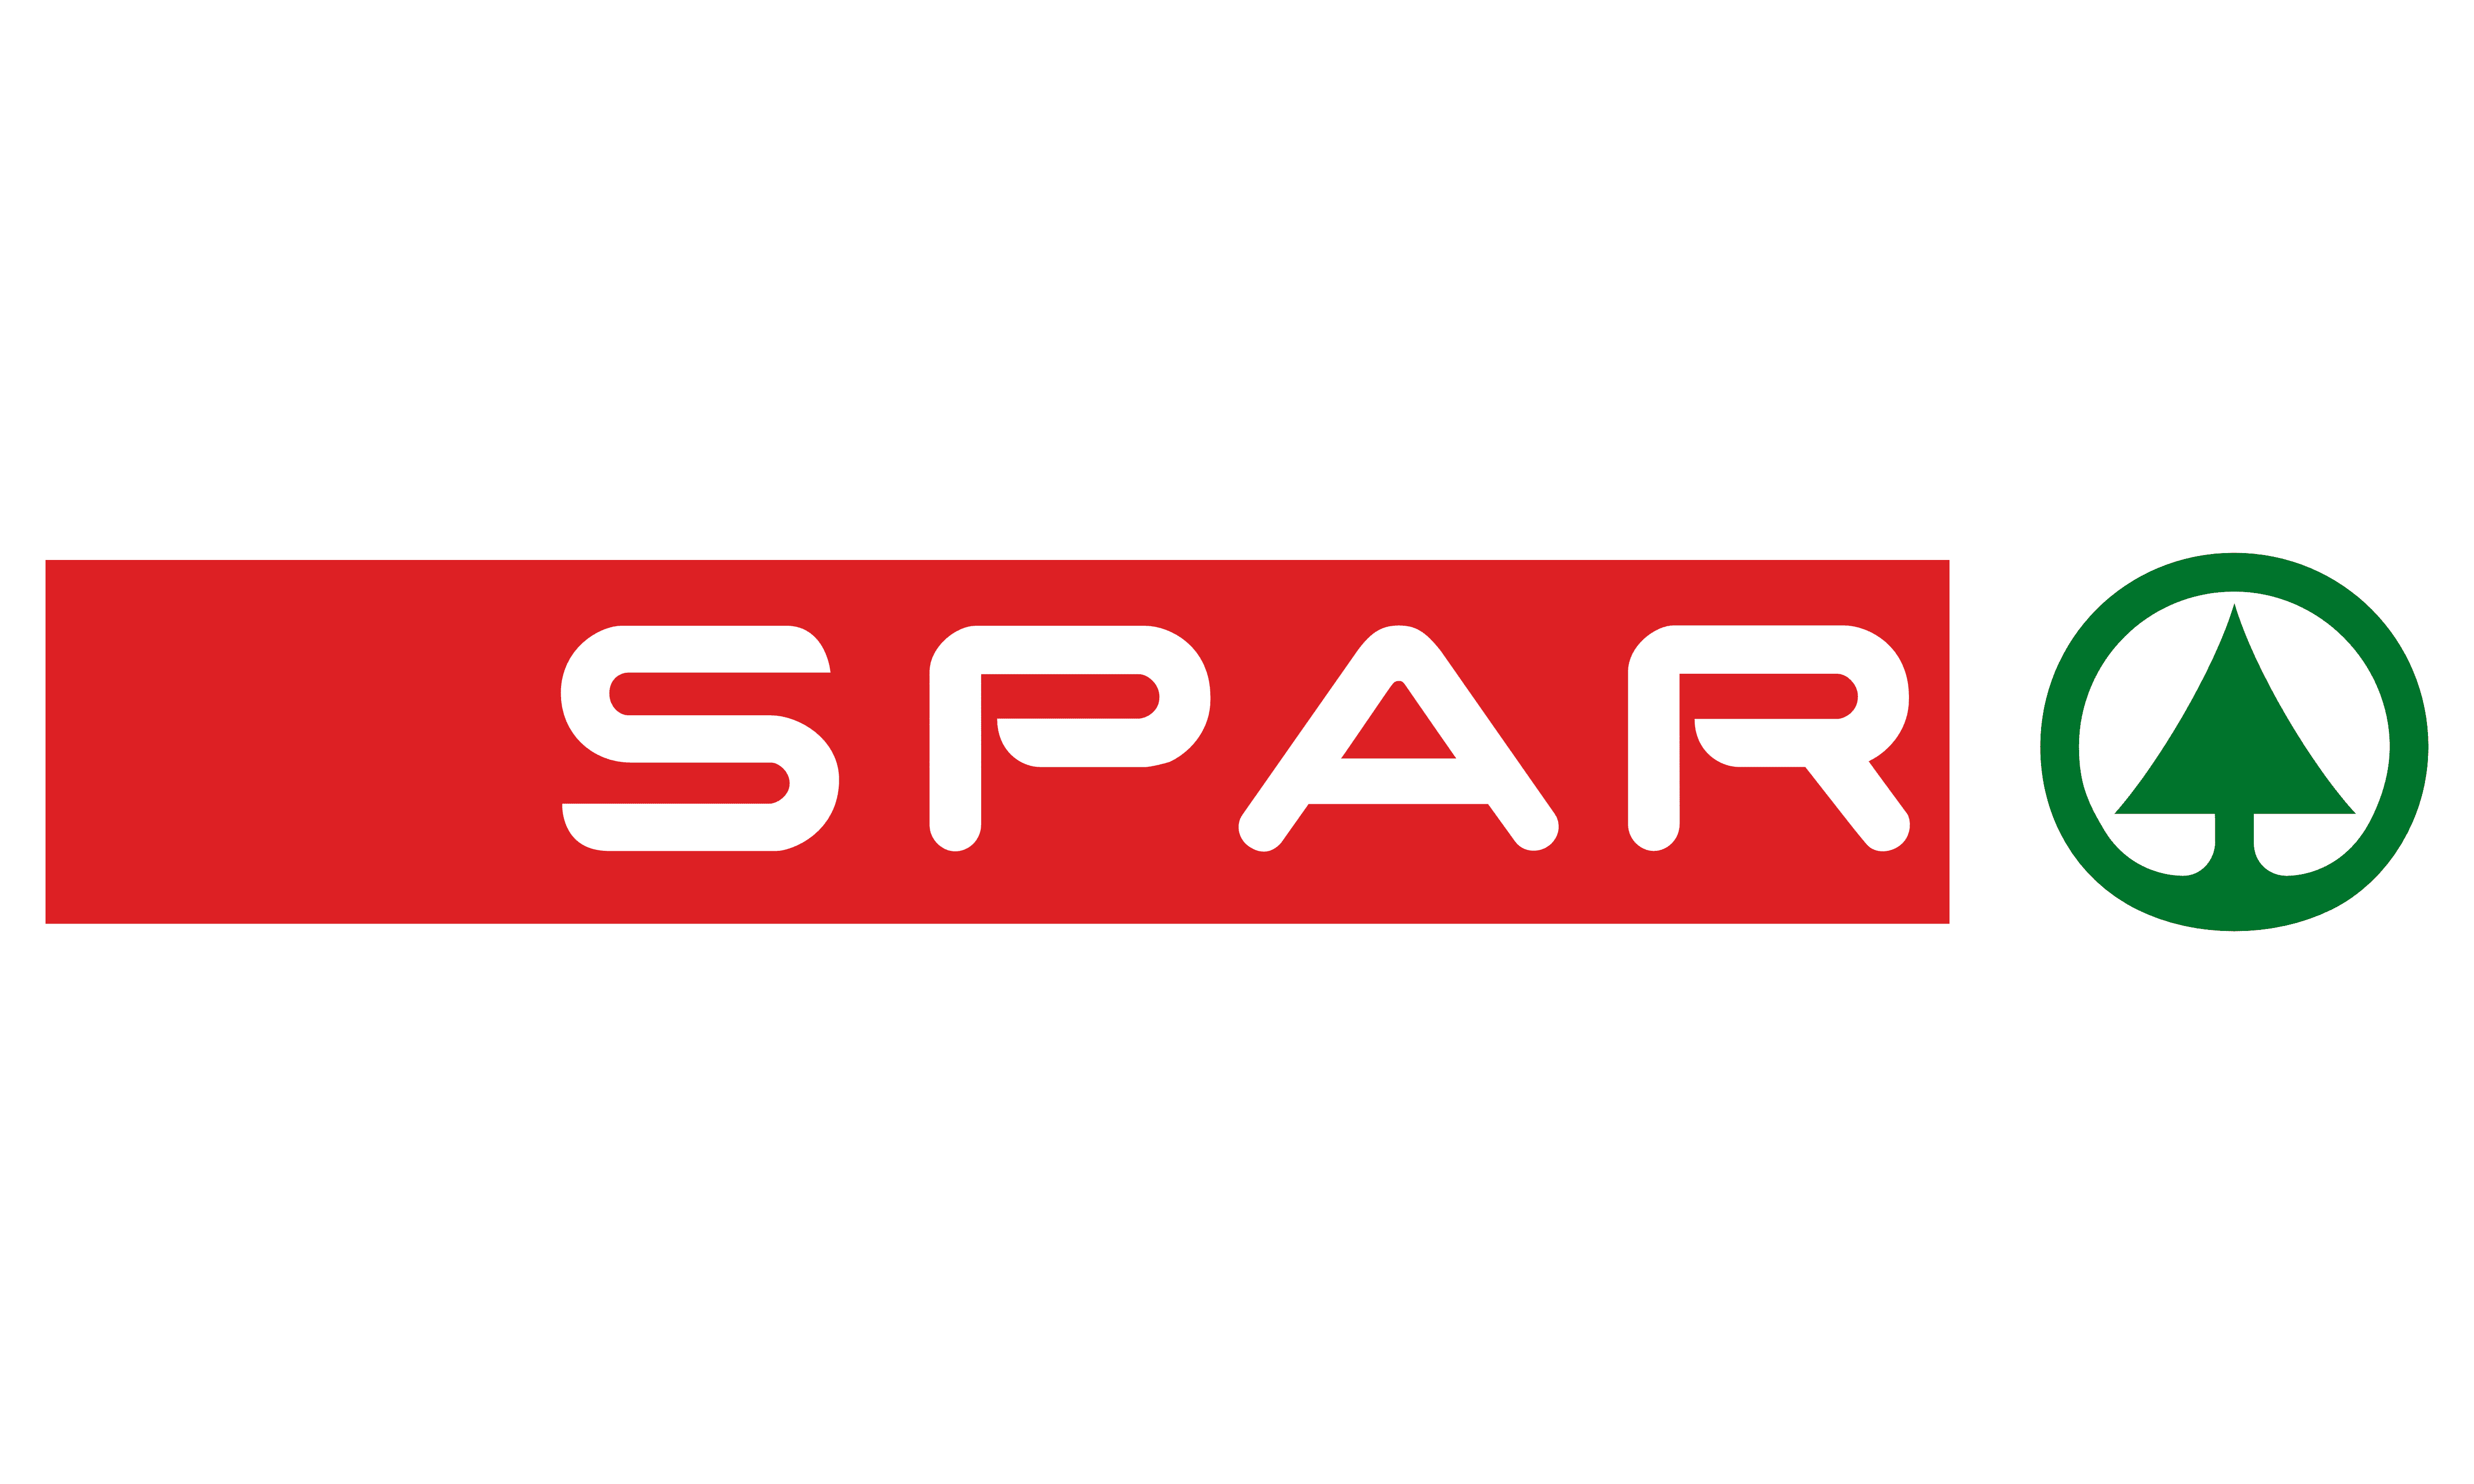 Spar company logo